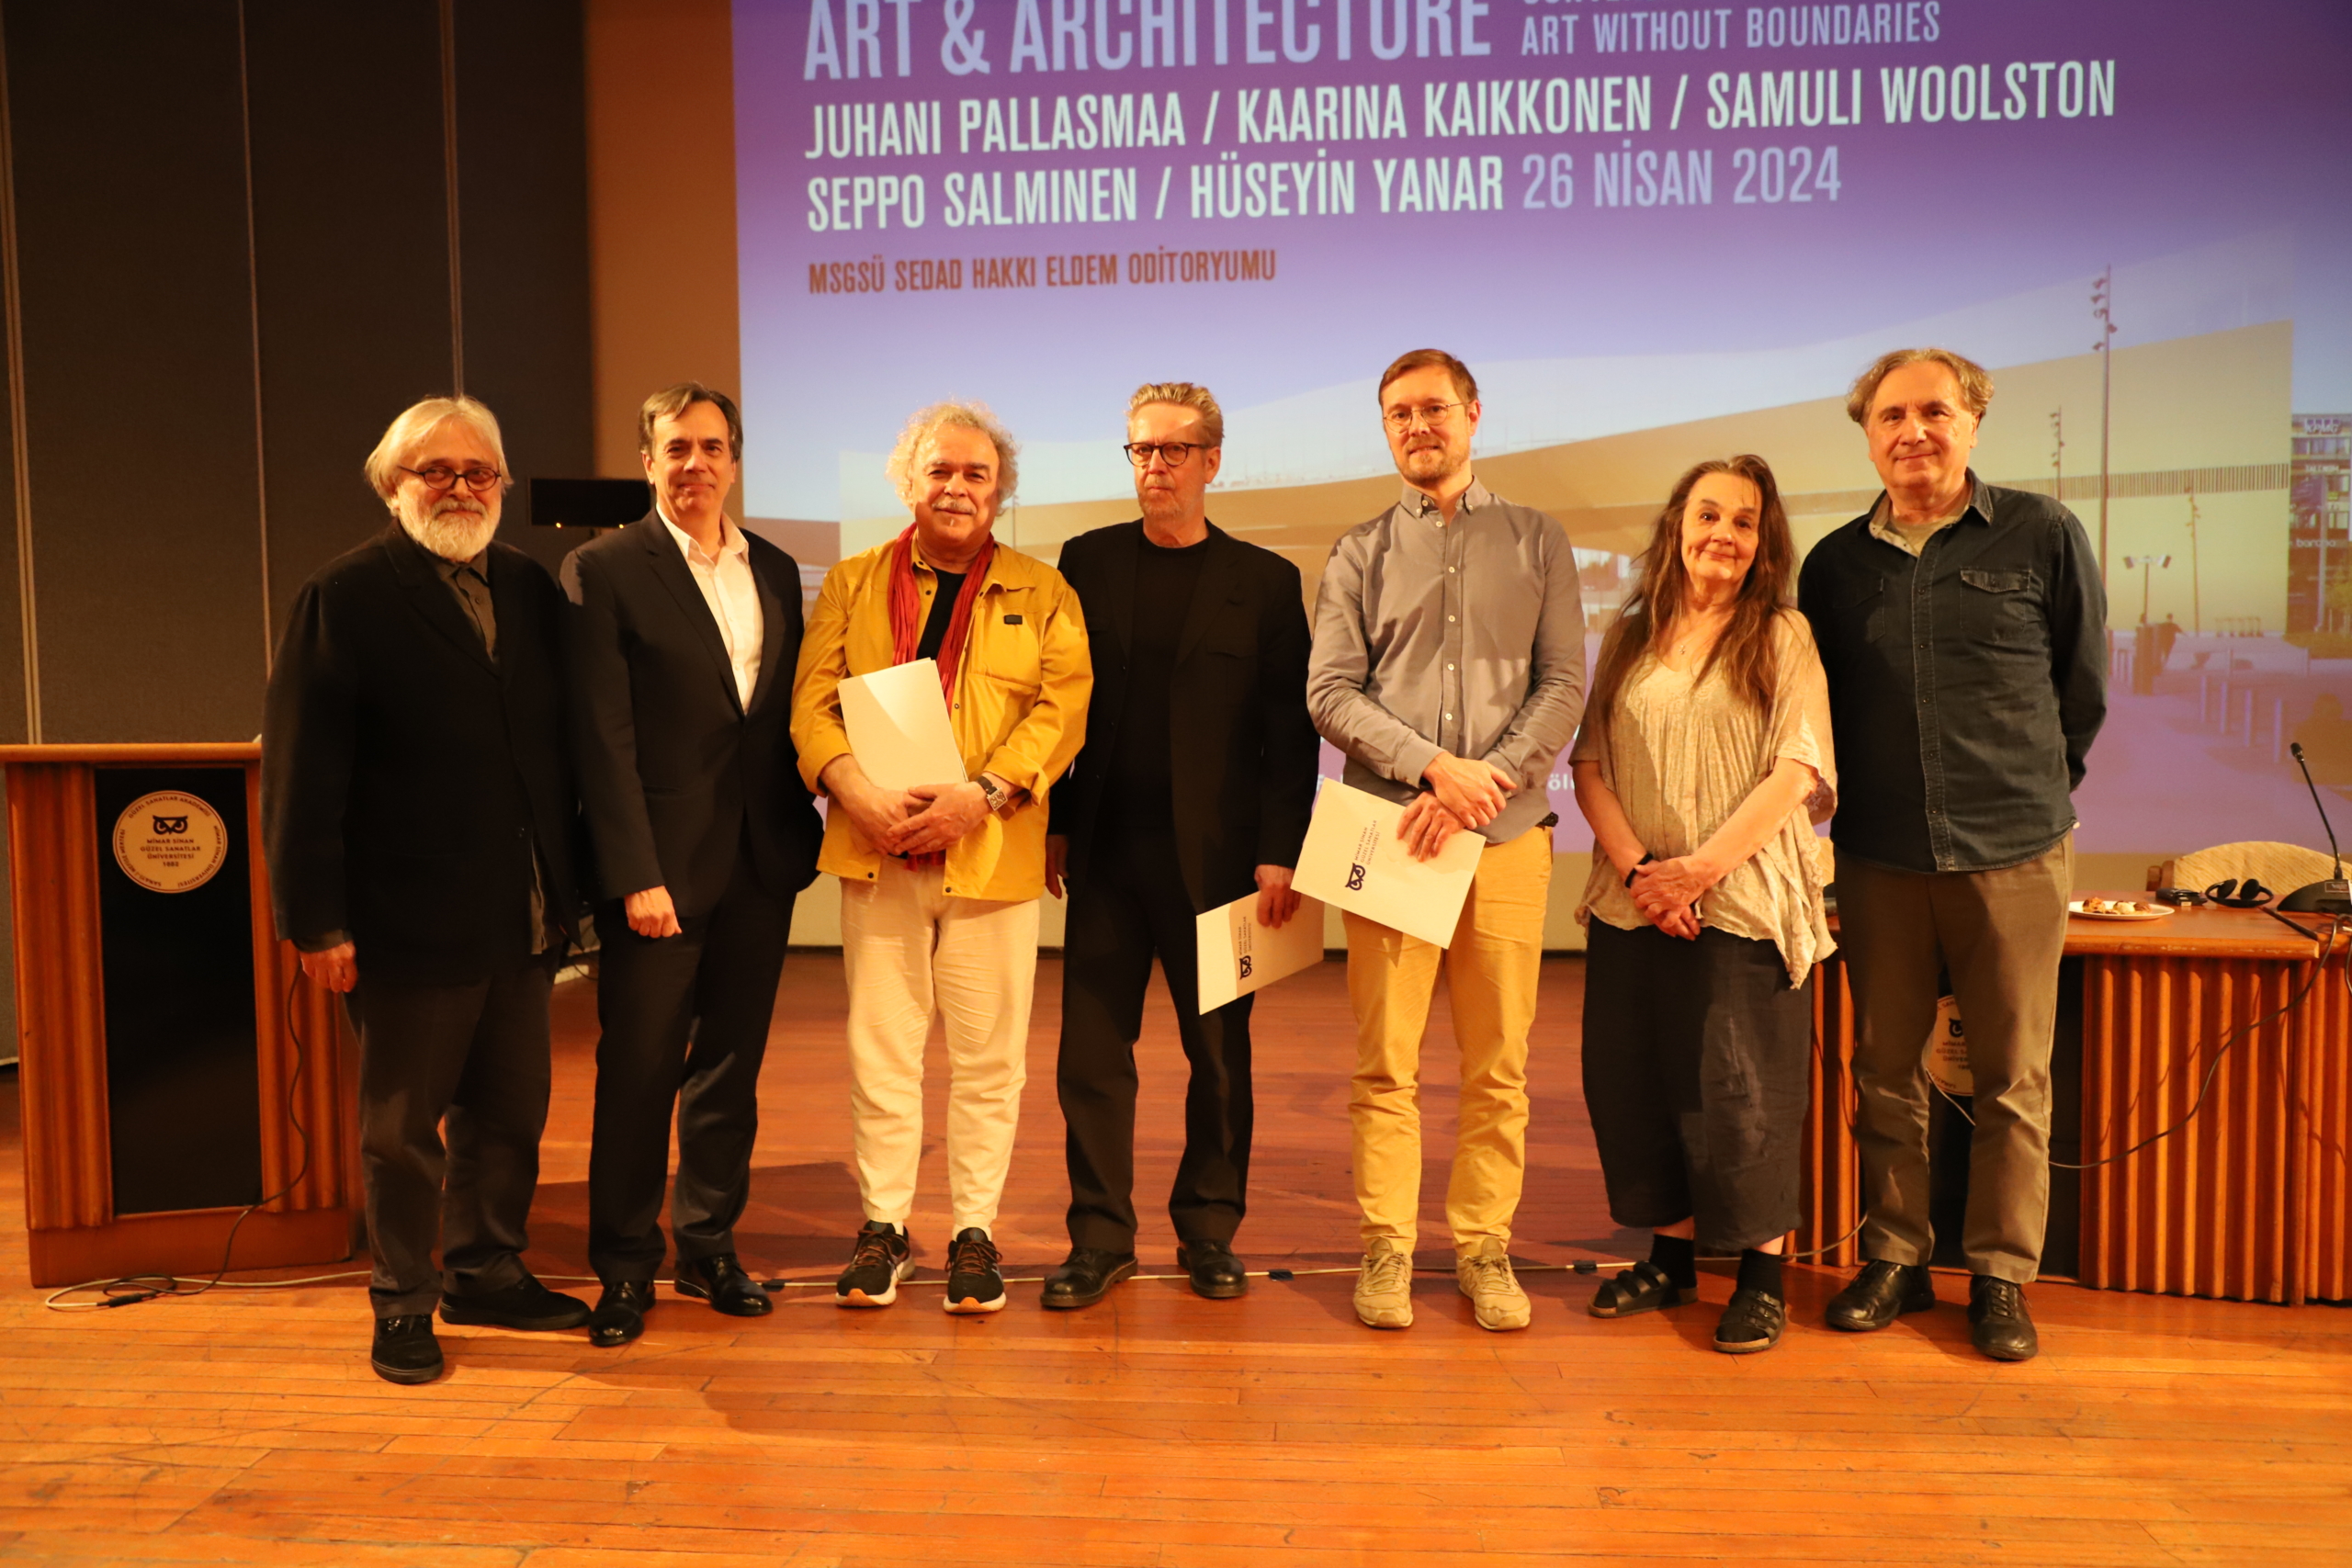 Art & Architecture Panelistleri ve AURA İstanbul kurucu üyeleri. Yılmaz Değer, Kurtul Erkmen, Hüseyin Yanar, Seppo Salminen, Samuli Woolston, Kaarina Kaikkonen, Sinan İzgi. 